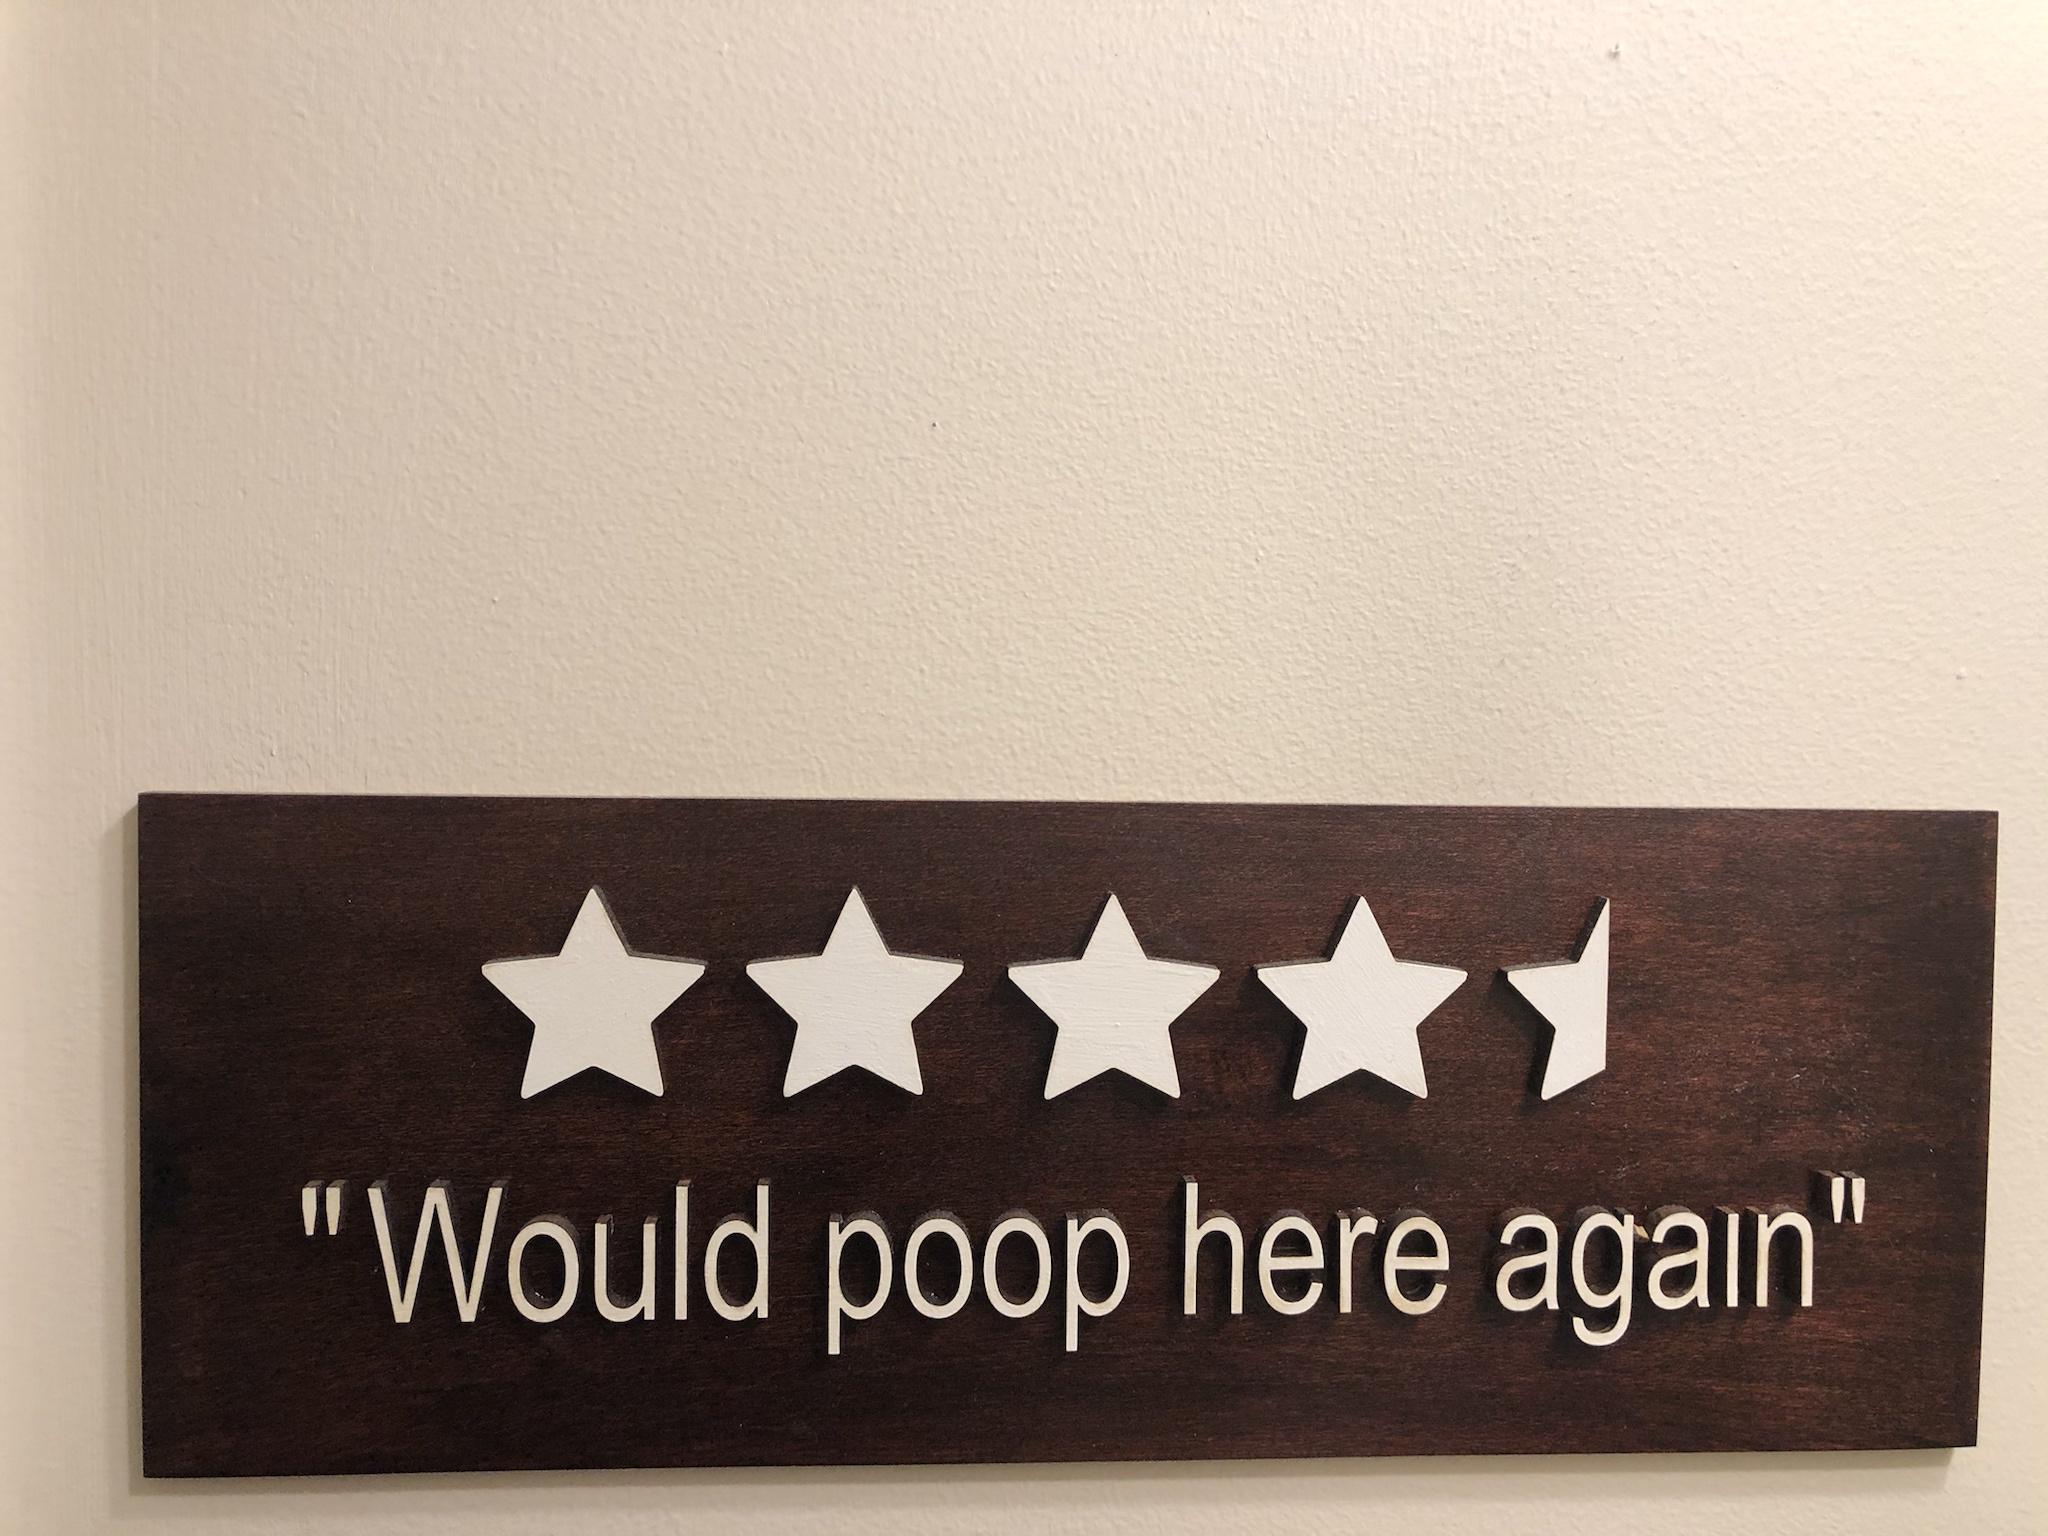 "Would poop here again